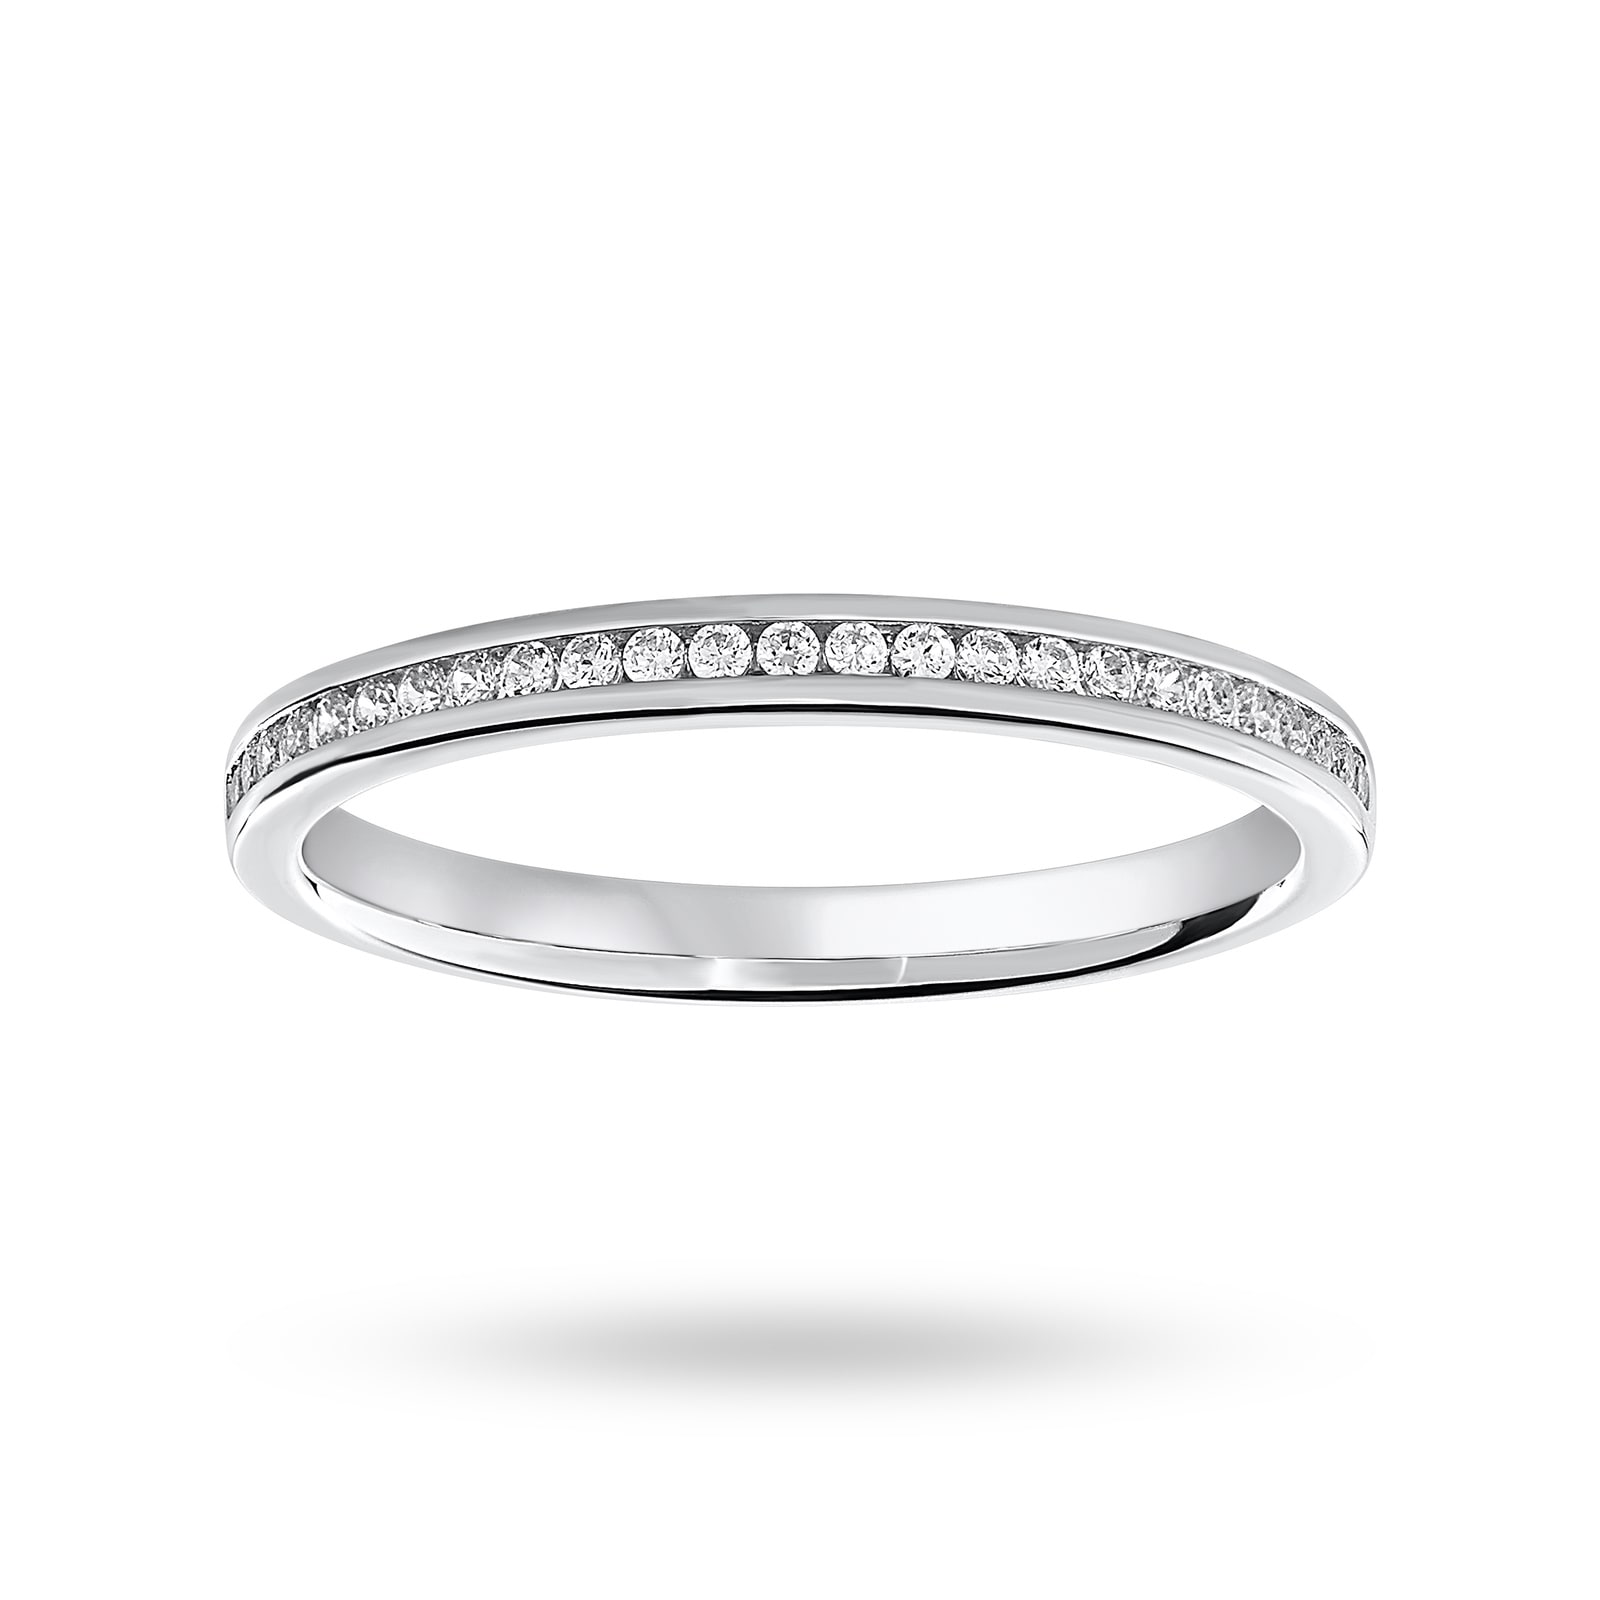 Platinum 0.12 Carat Brilliant Cut Half Eternity Ring - Ring Size L